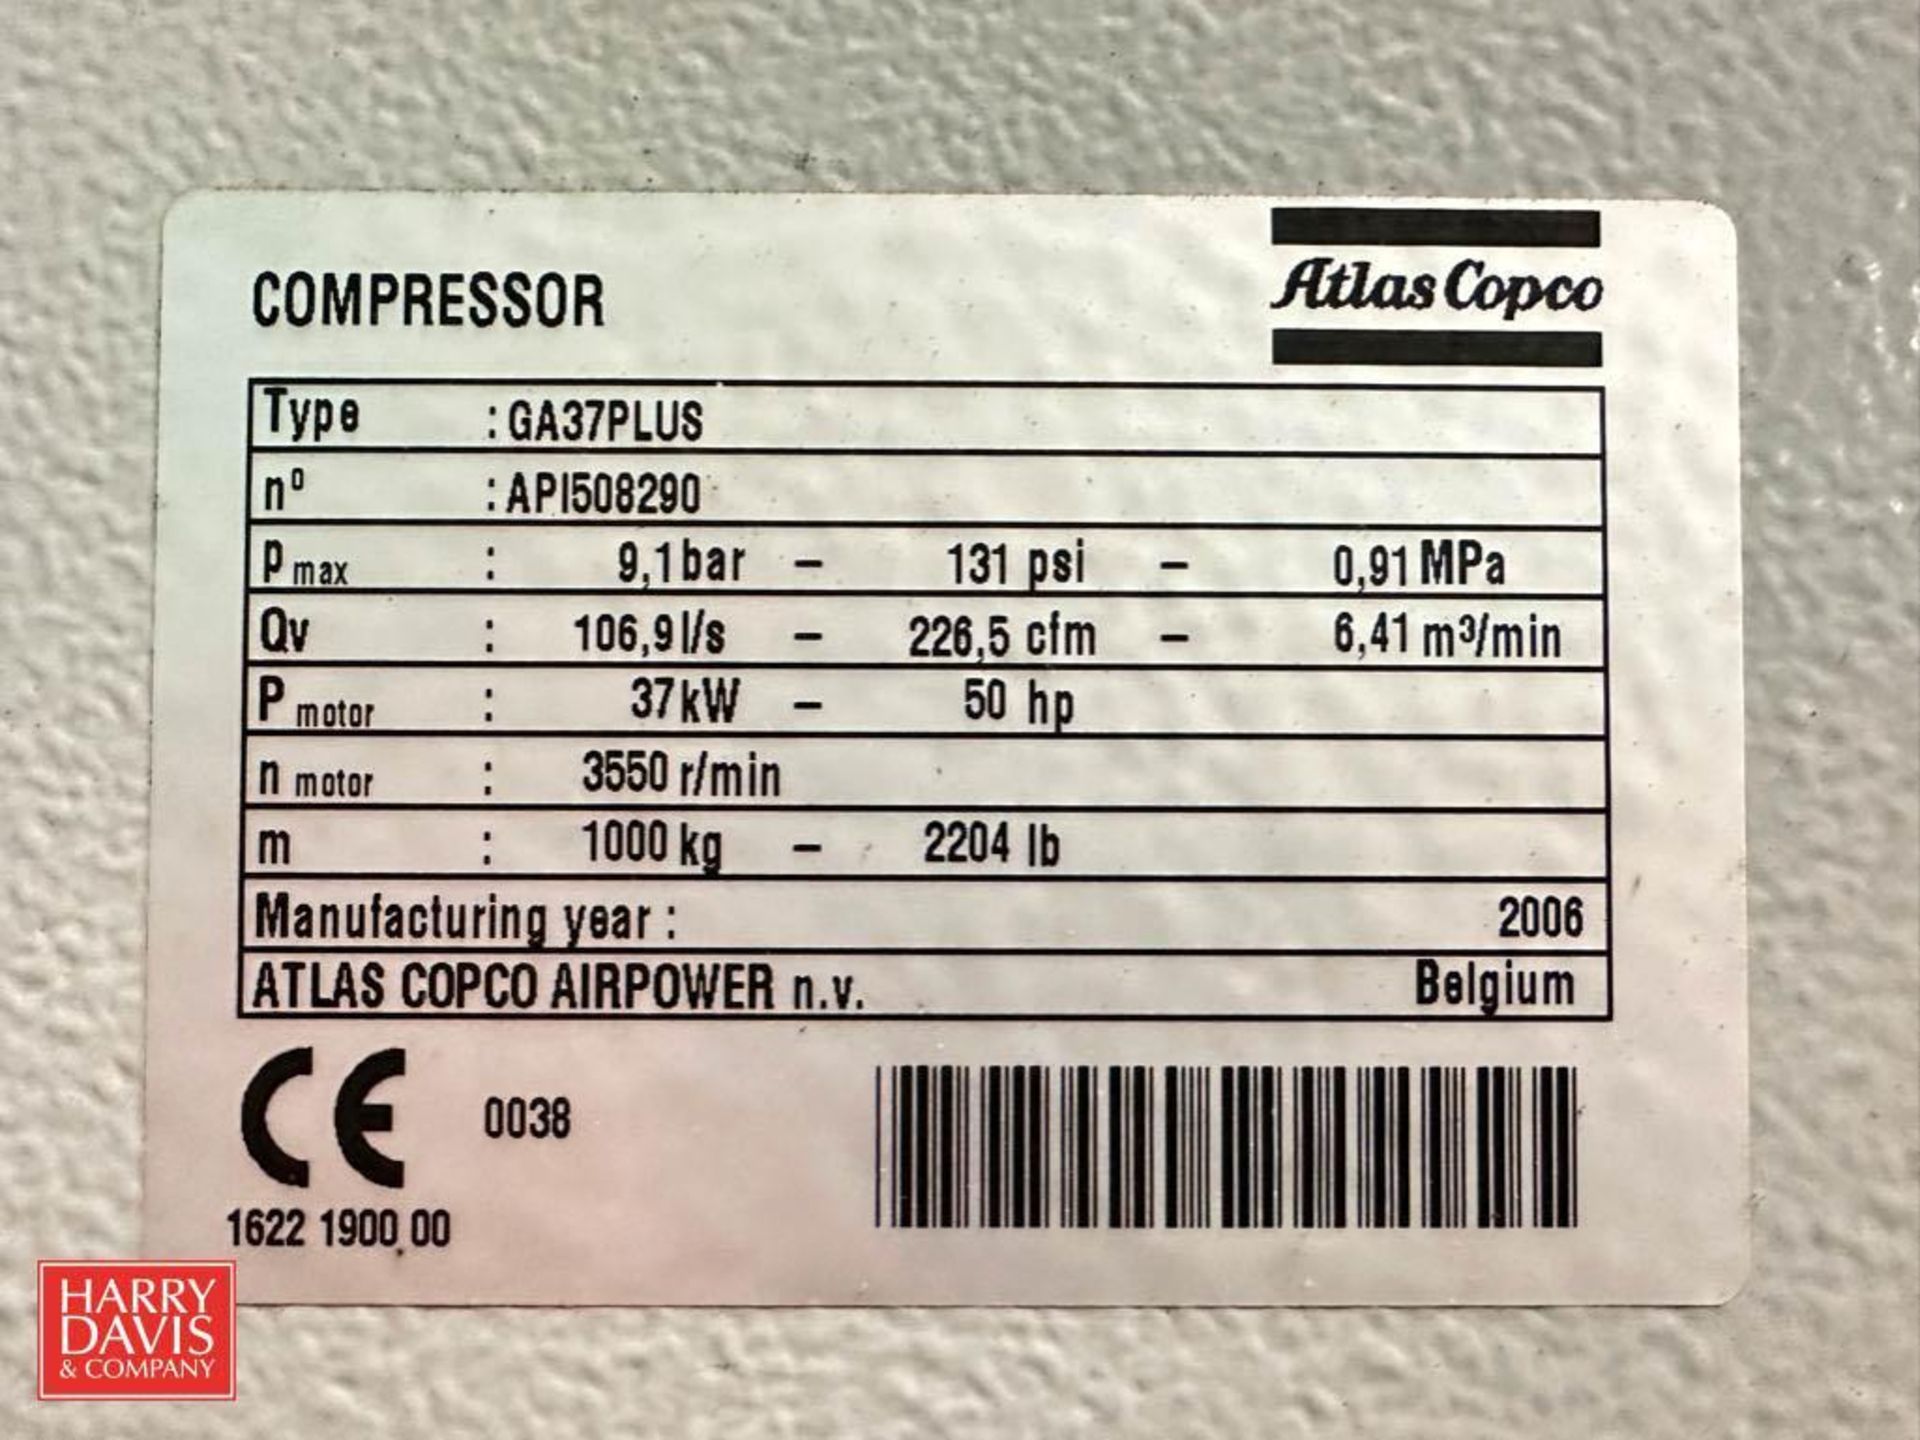 Atlas Copco 50 HP 131 PSI Air Compressor, Model: GA37PLUS, S/N: API508290 - Image 2 of 2